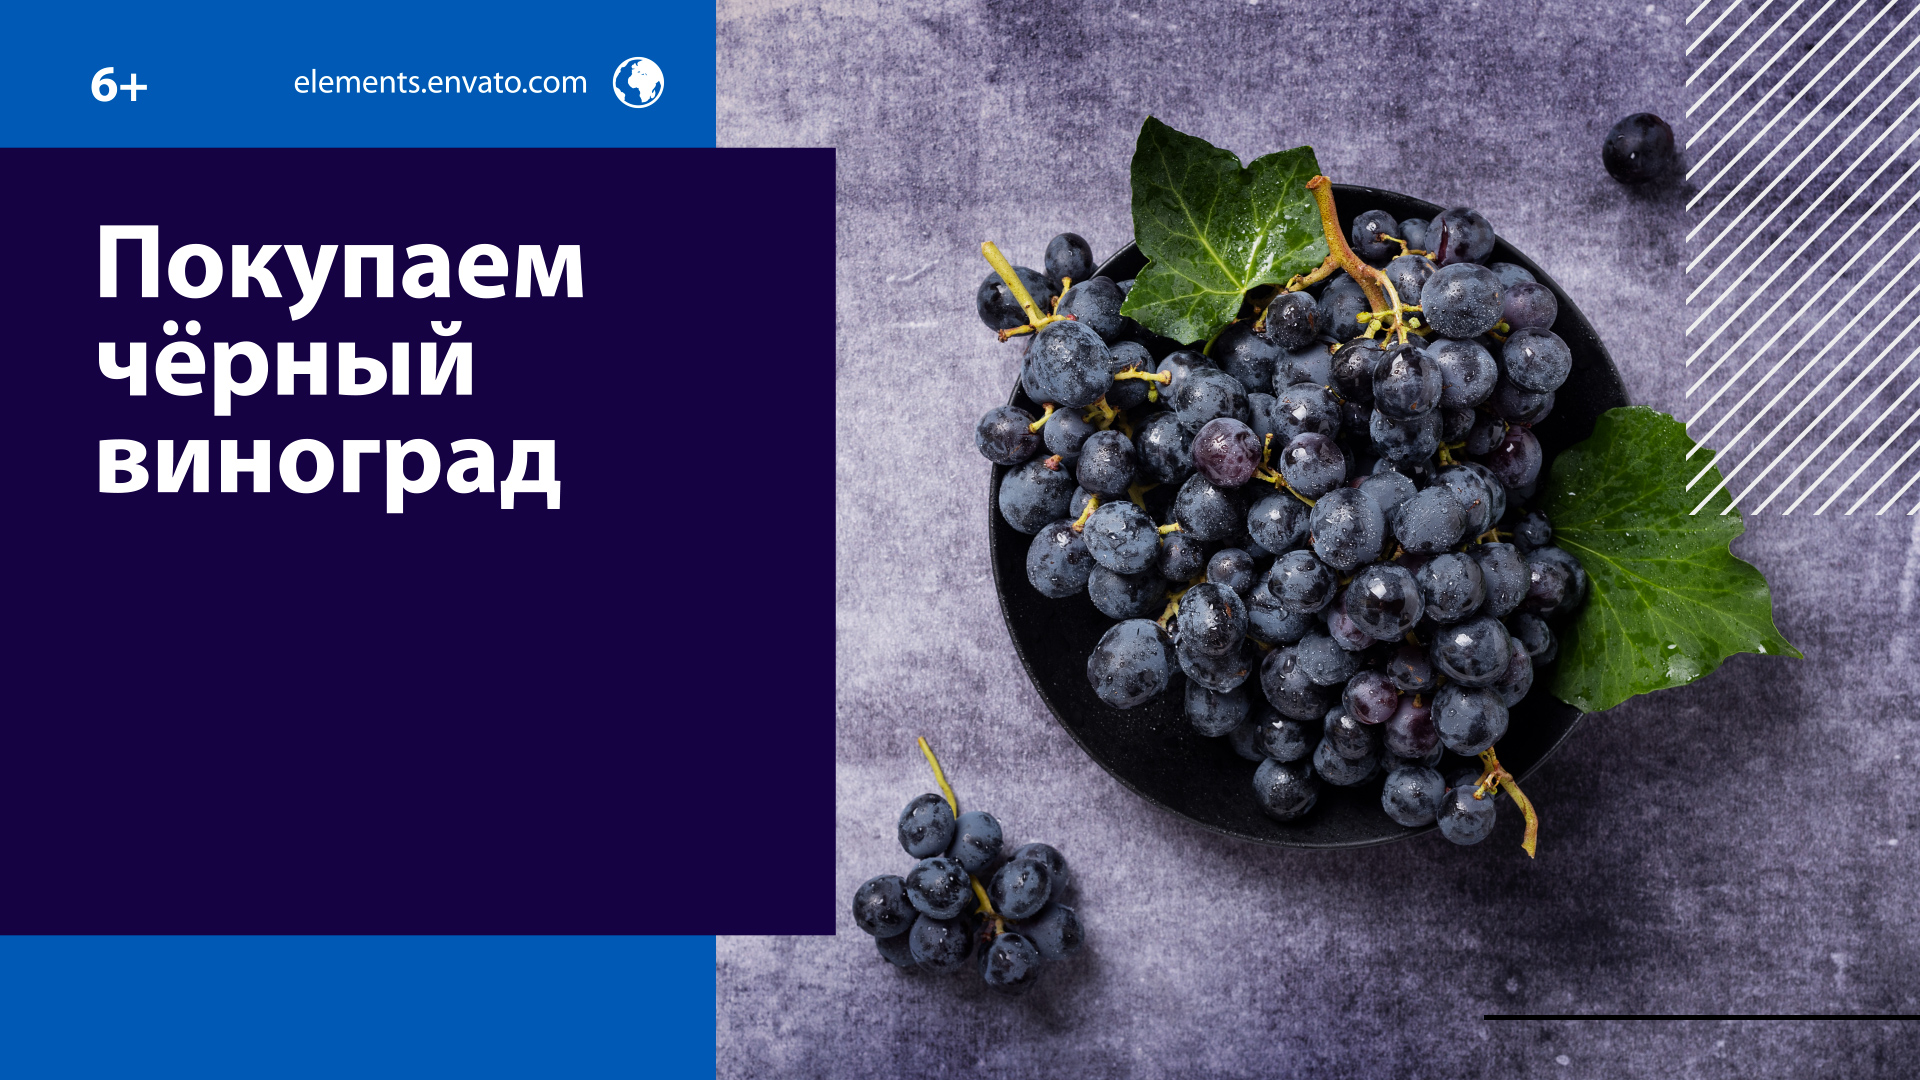 Как не ошибиться при выборе чёрного винограда? — Москва FM